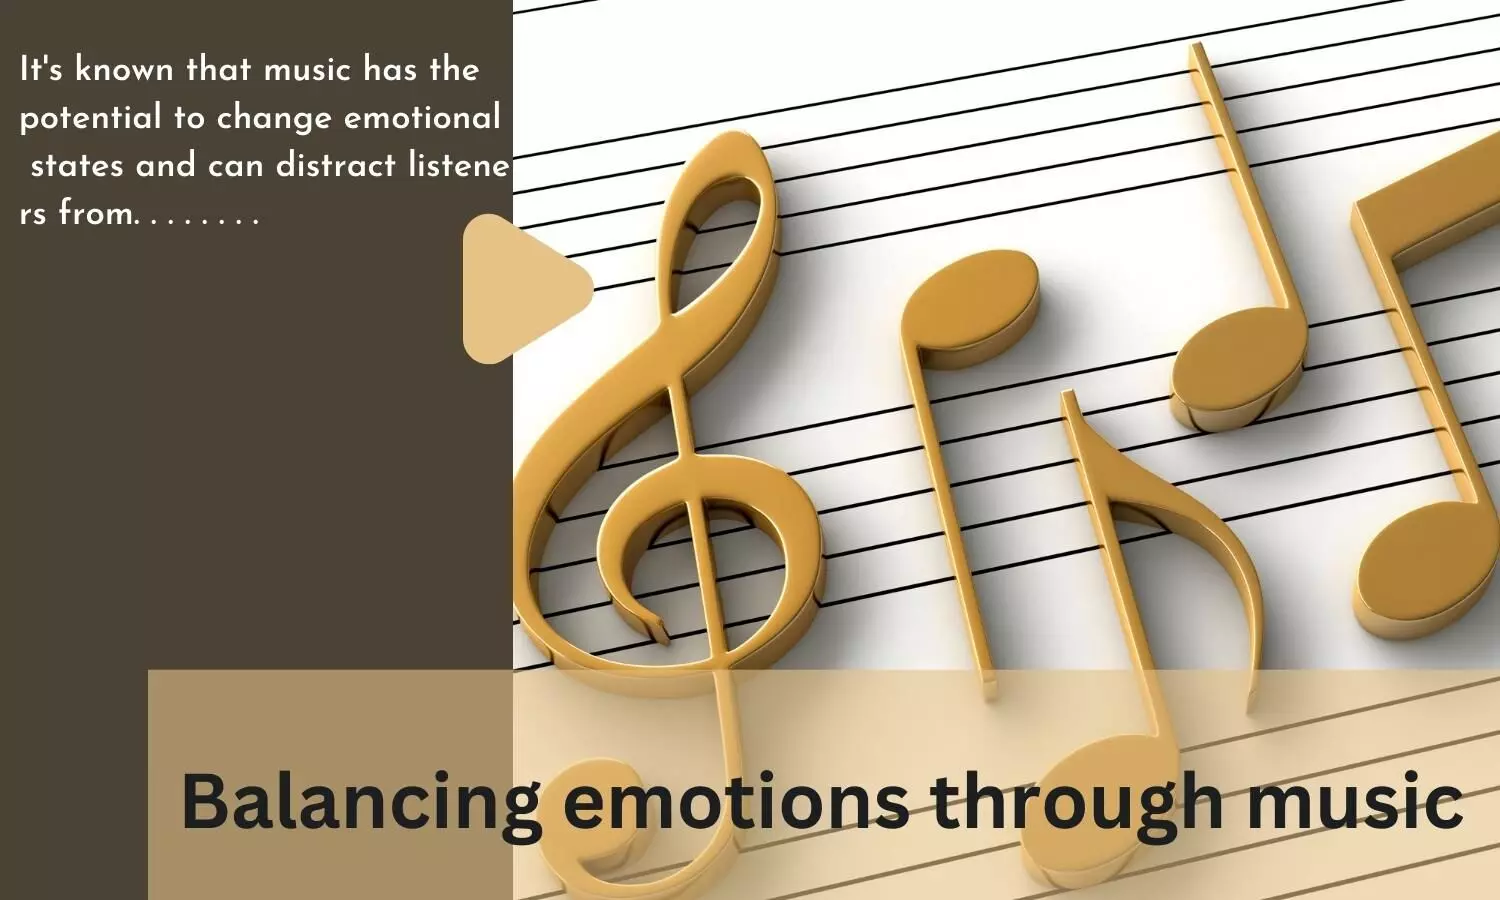 Balancing emotions through music